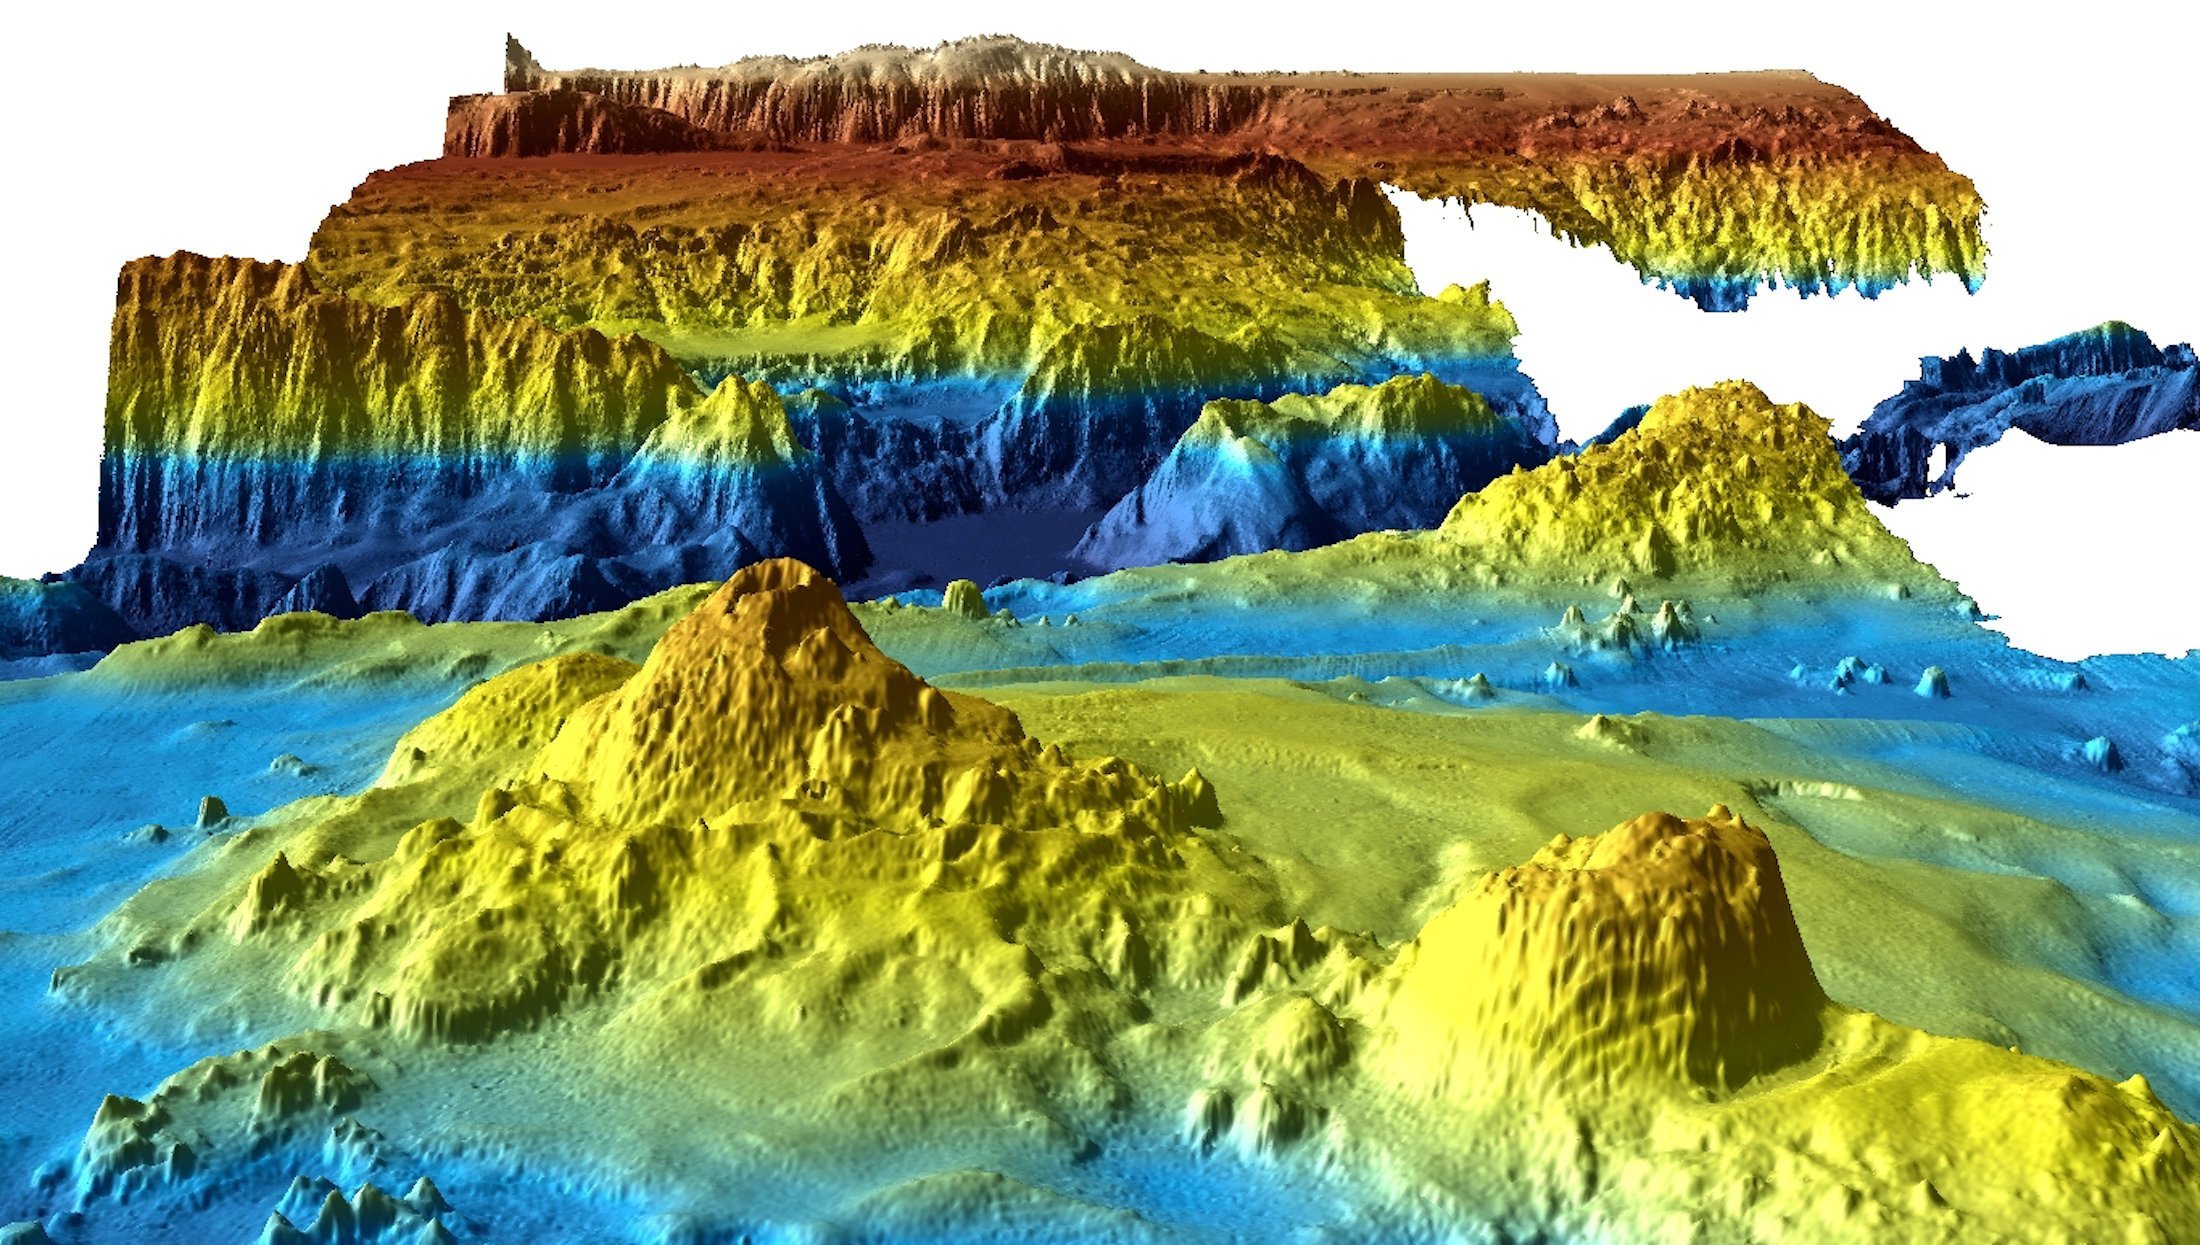 Imagem tridimensional do fundo do mar obtida durante as buscas pelo voo MH370